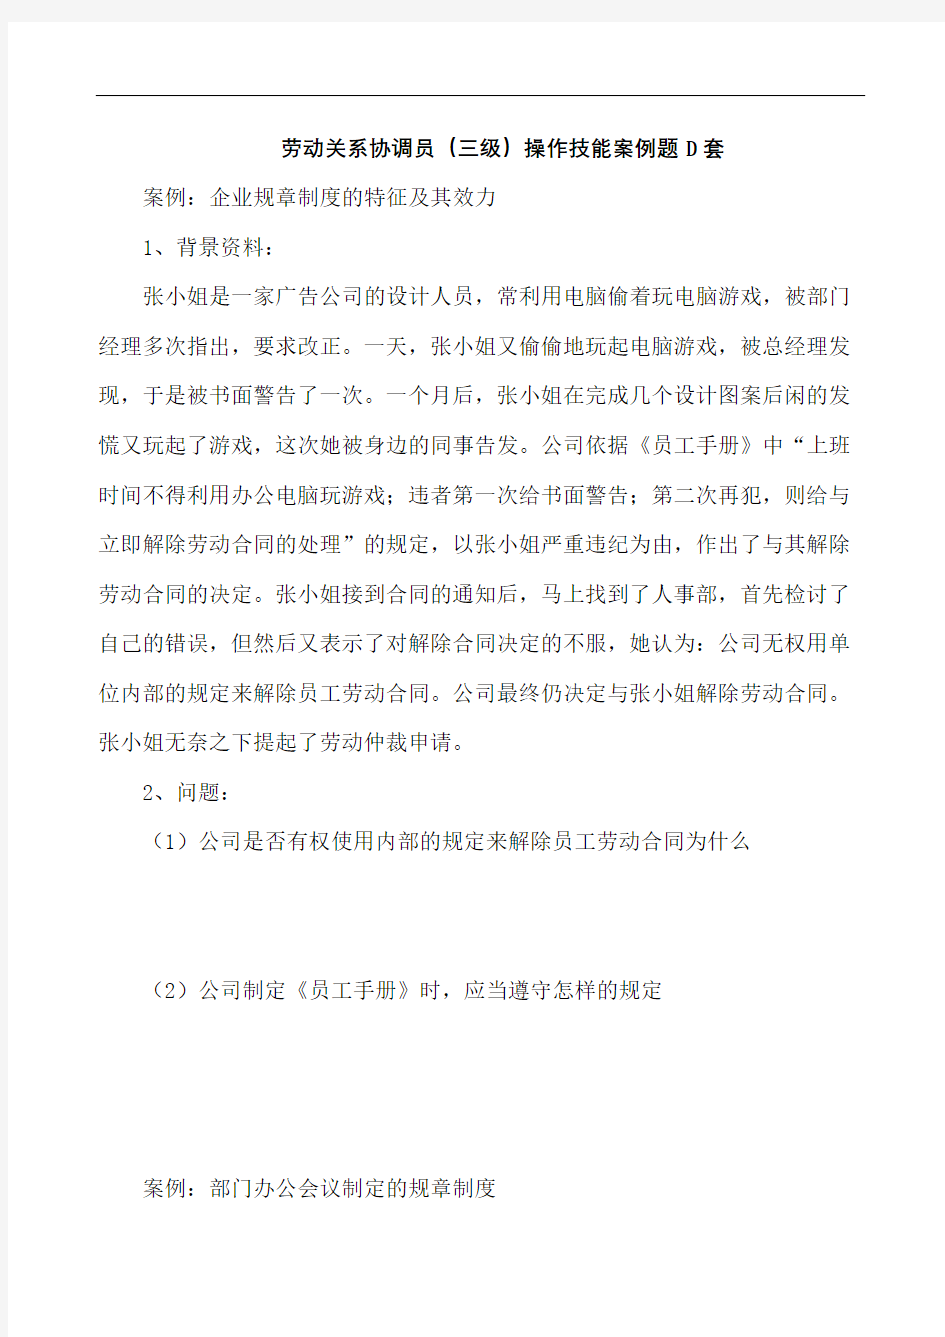 上海劳动关系协调员案例分析题D及答案